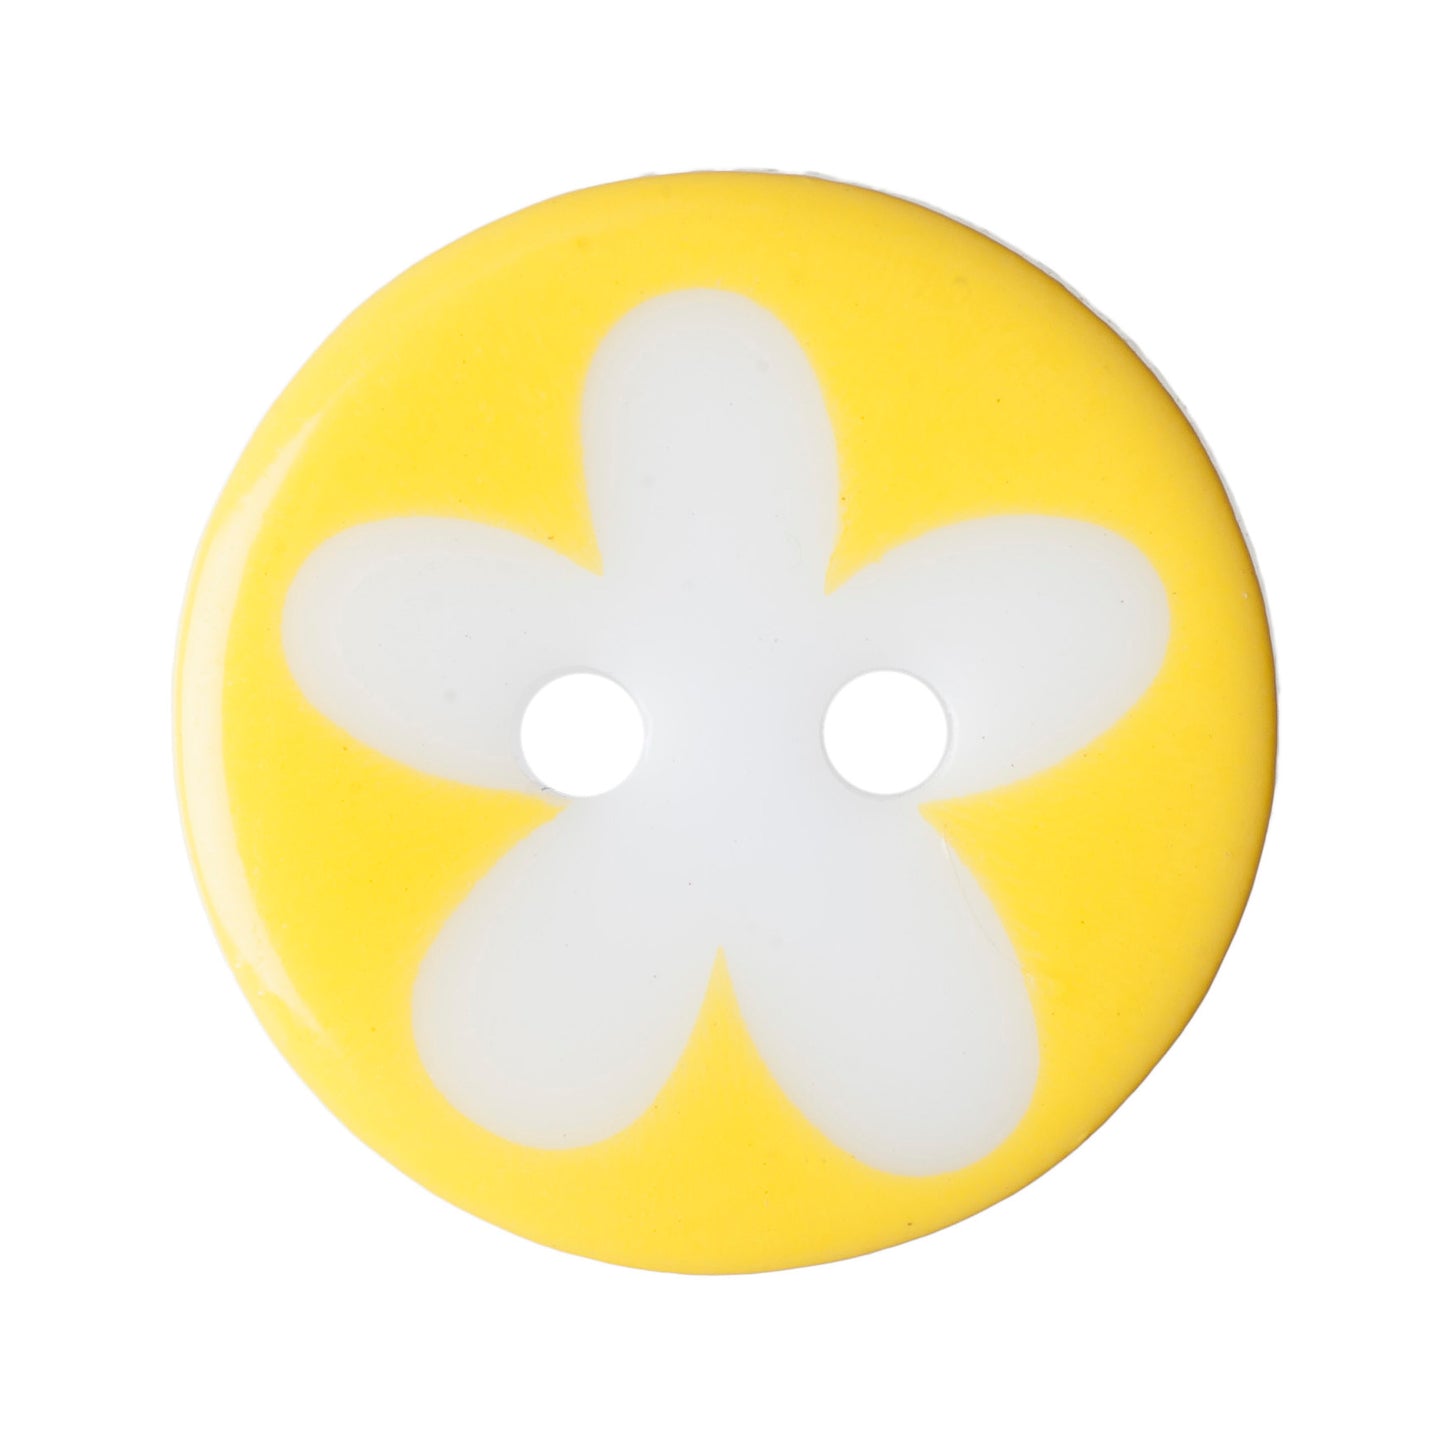 Flower Buttons - 17mm